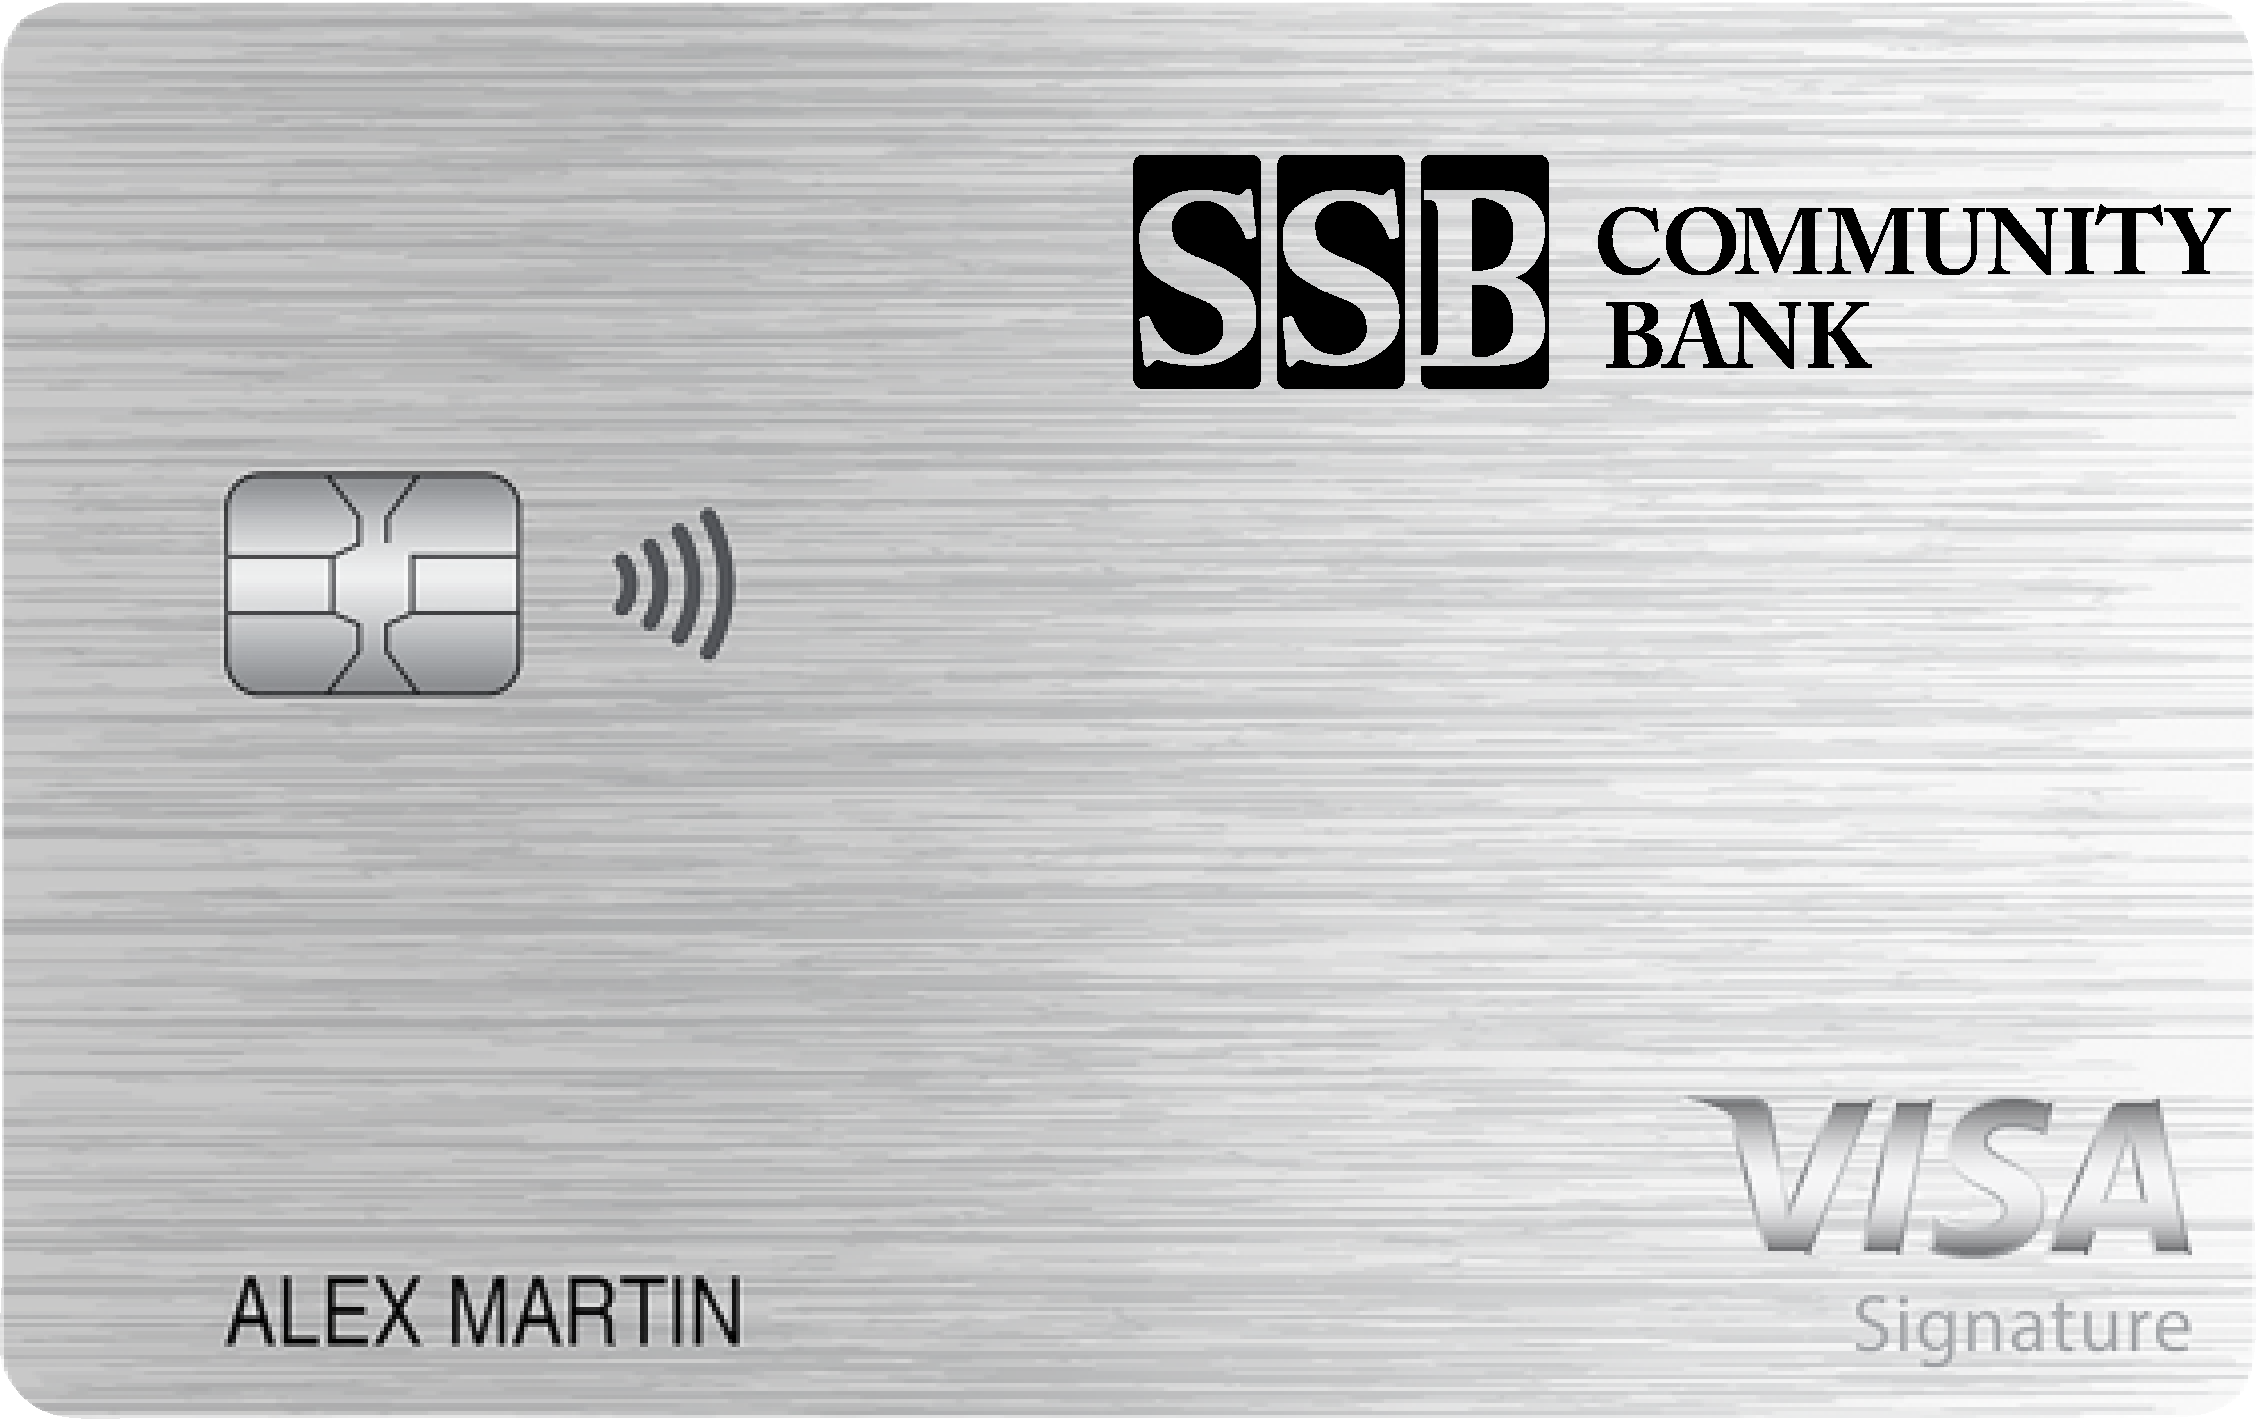 SSB Community Bank Max Cash Preferred Card